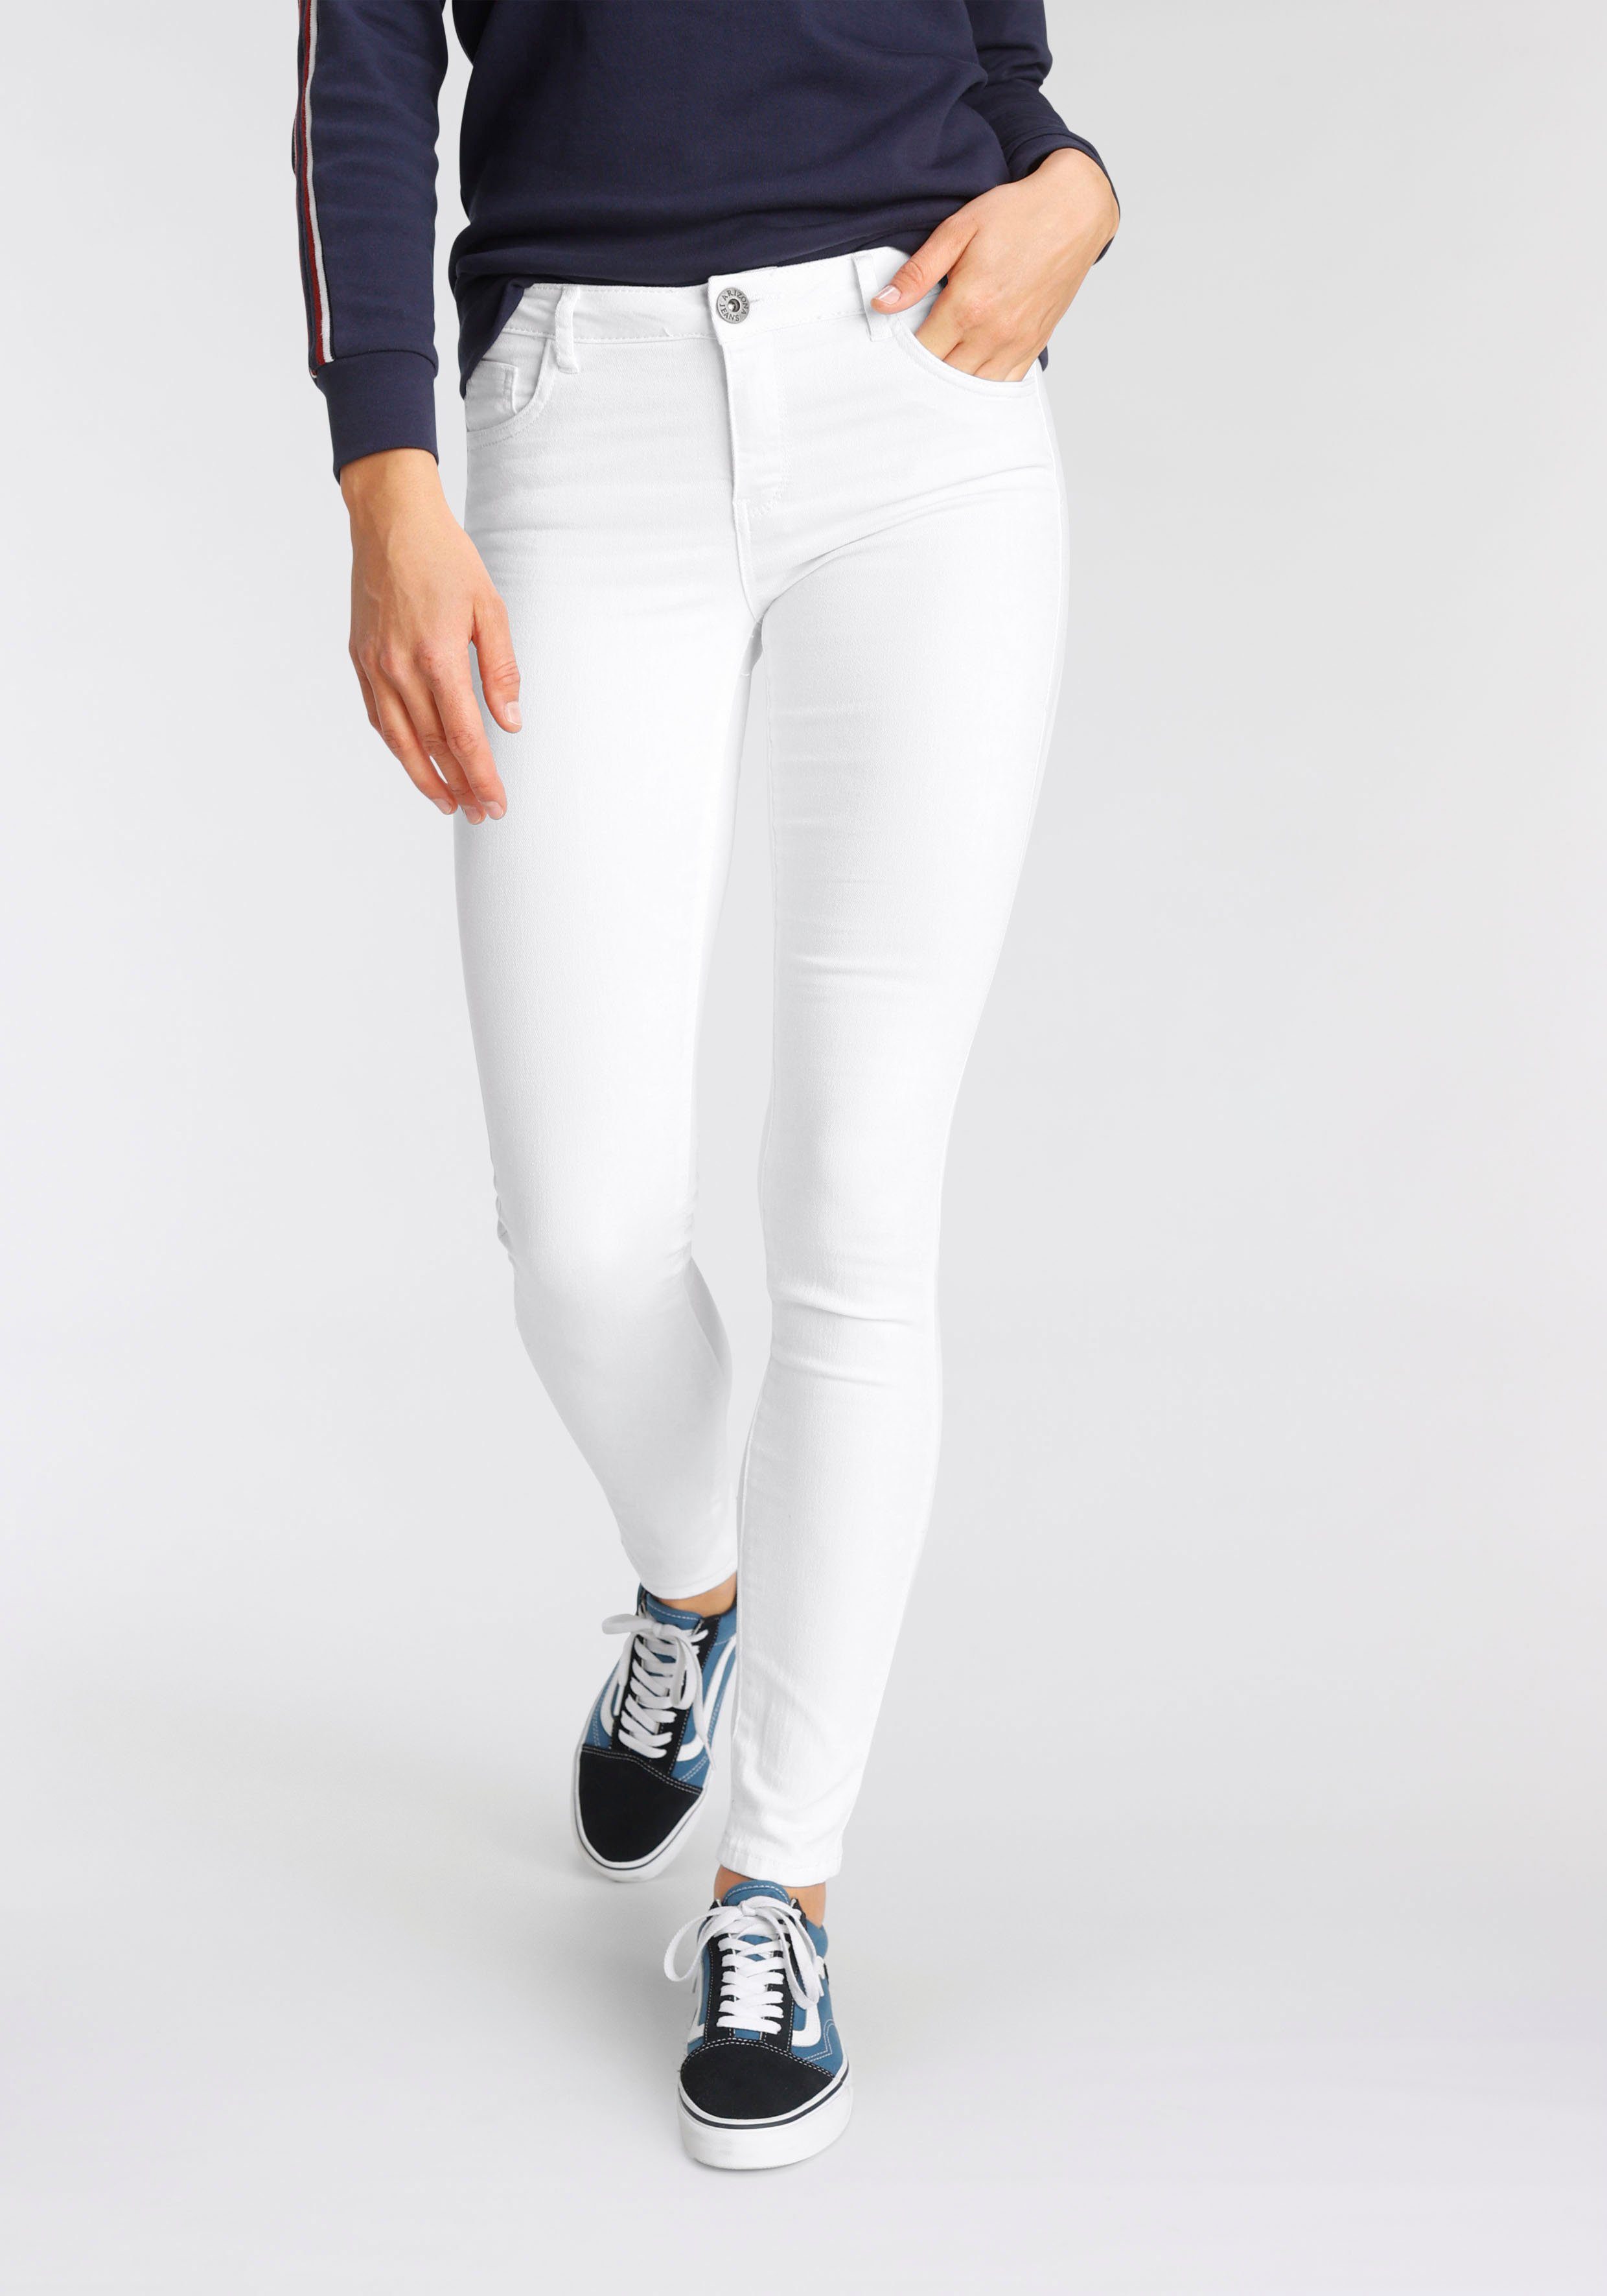 Weiße Cecil Jeans für Damen online kaufen | OTTO